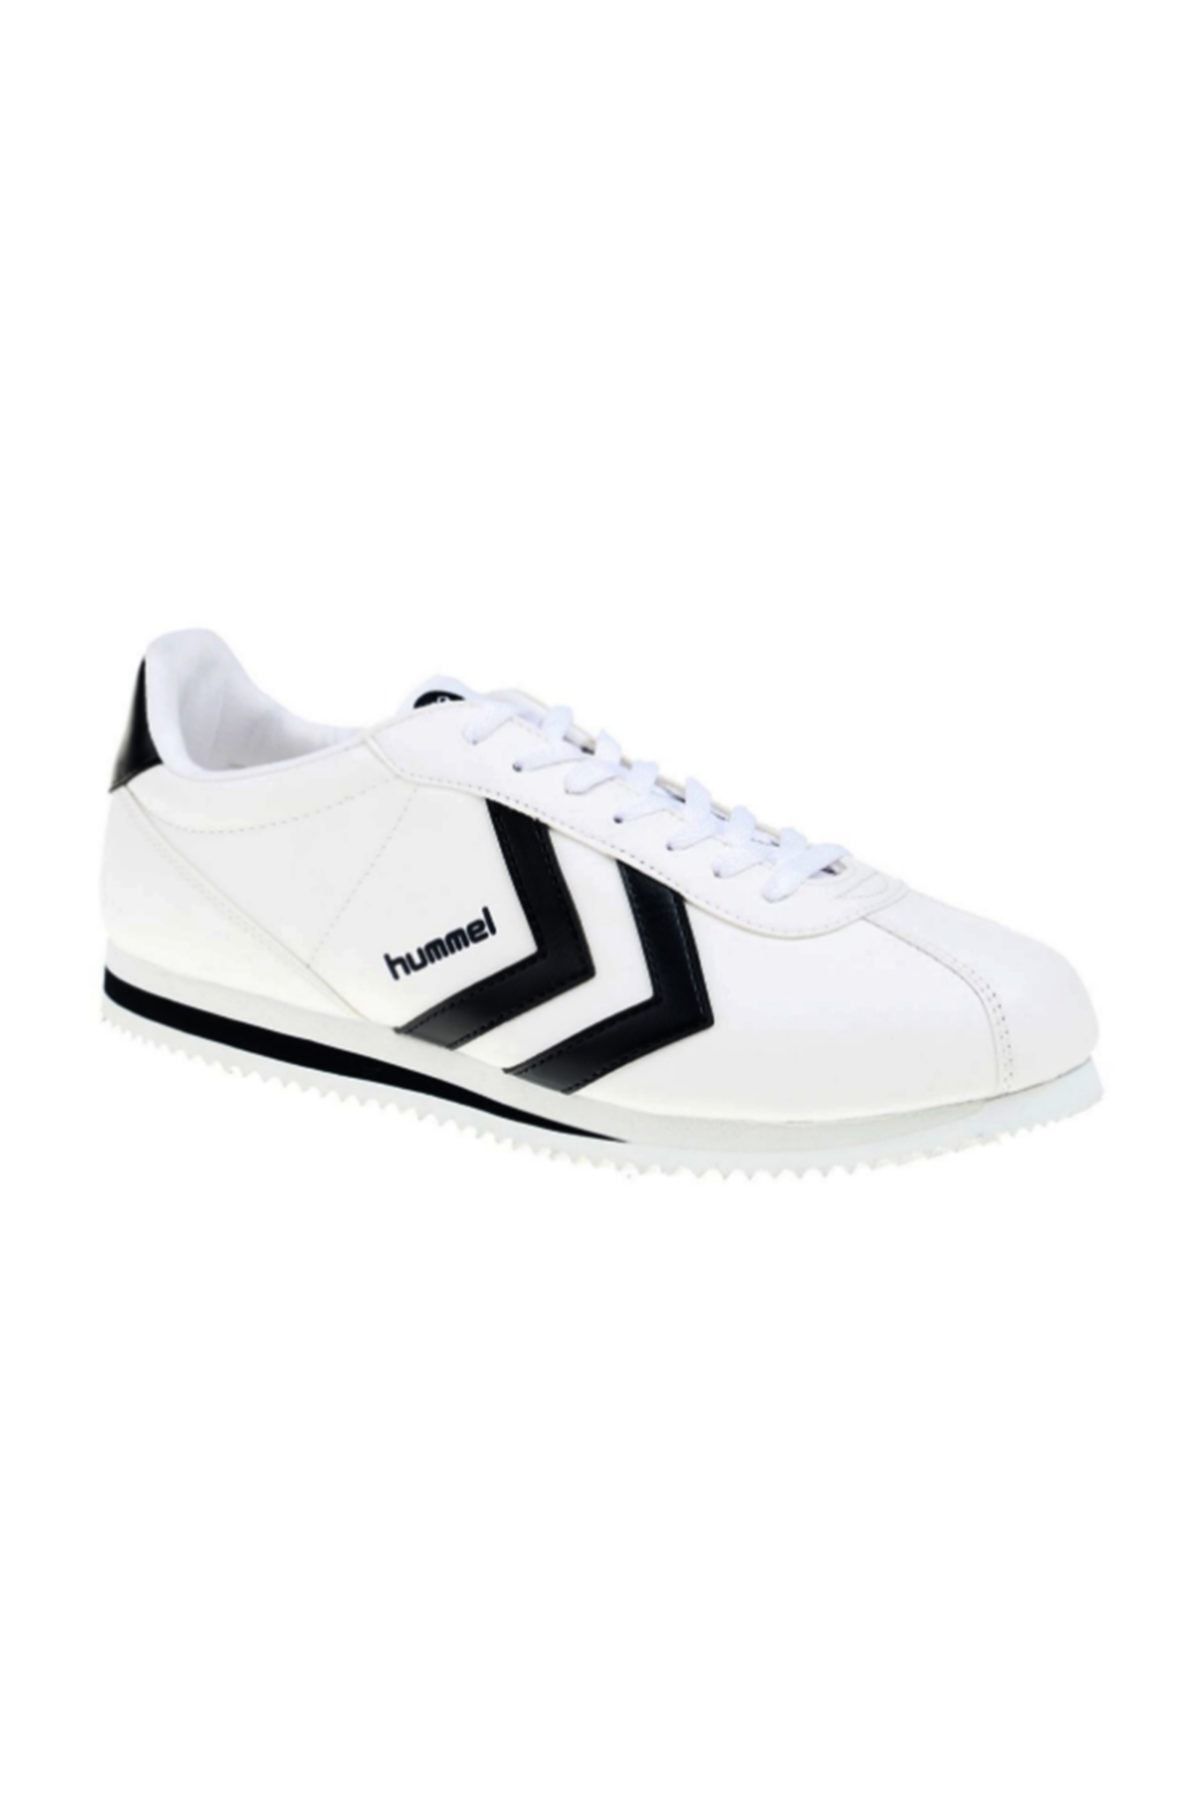 hummel Kadın Beyaz Spor Ayakkabı 200988-0577